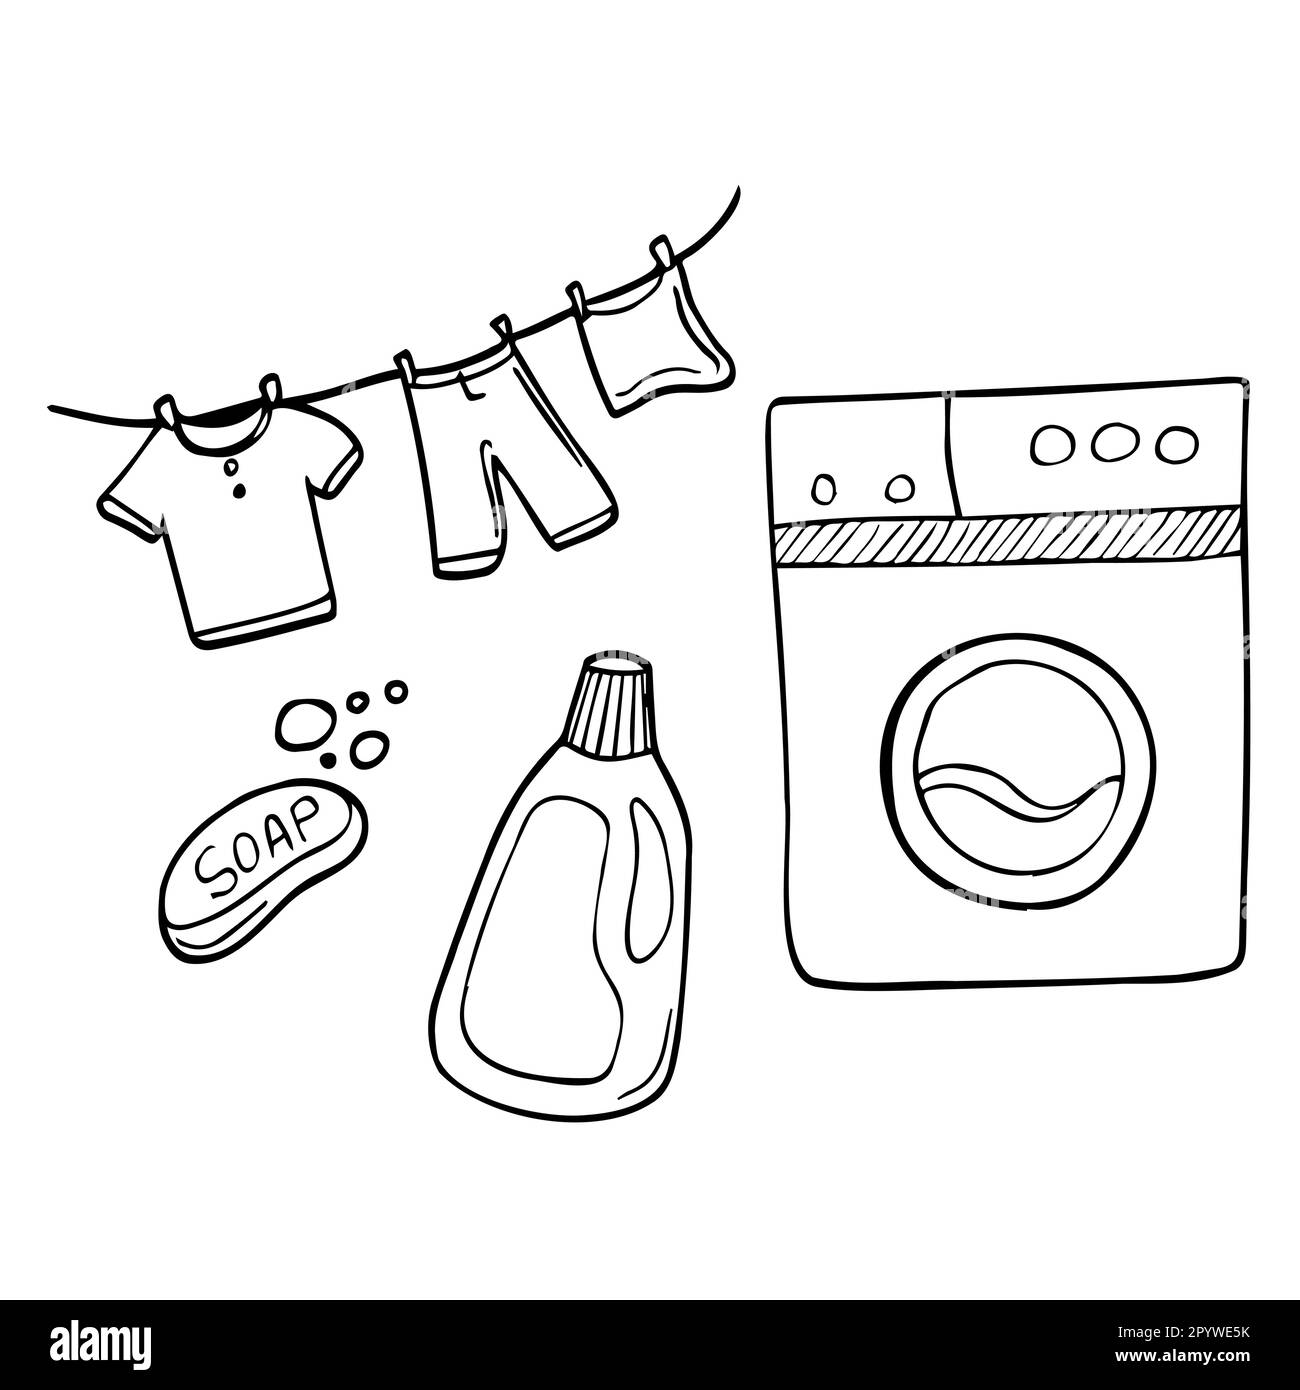 Servizio di lavanderia mano disegnata Doodle icone set, vettore illustrazione. Simboli di lavaggio, asciugatura e stiratura, lavatrice, cesto per la biancheria, asciugabiancheria Illustrazione Vettoriale